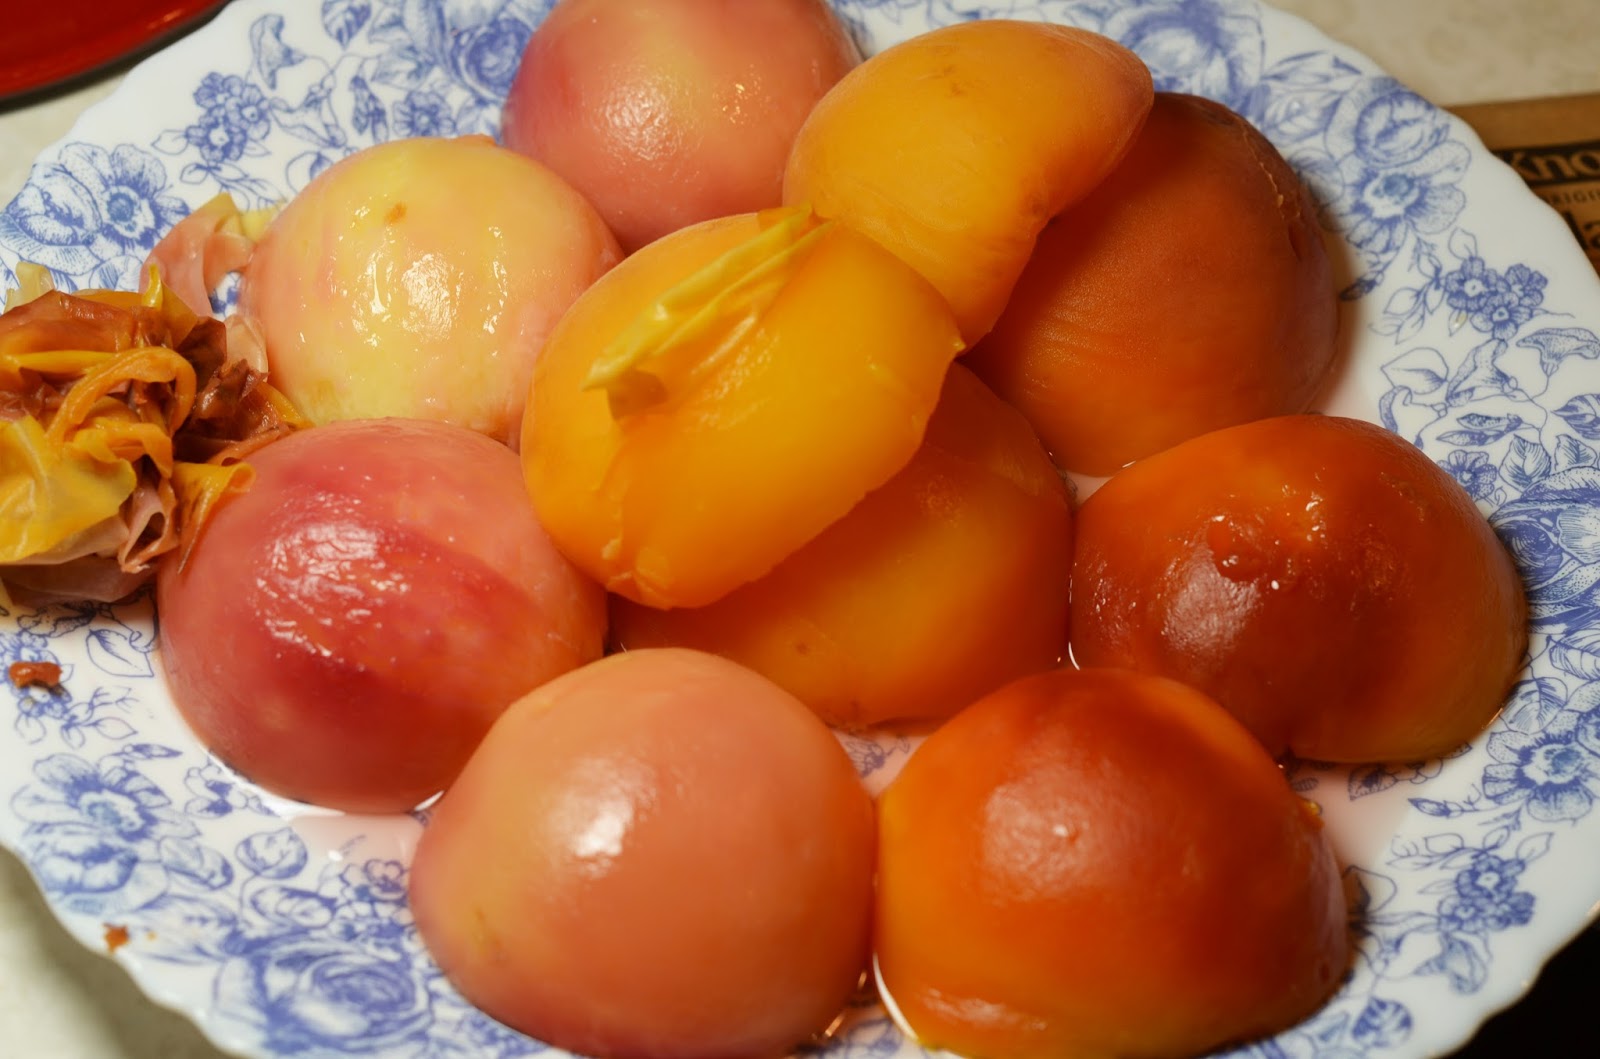 Peach Jelly Recipe Recipestudio